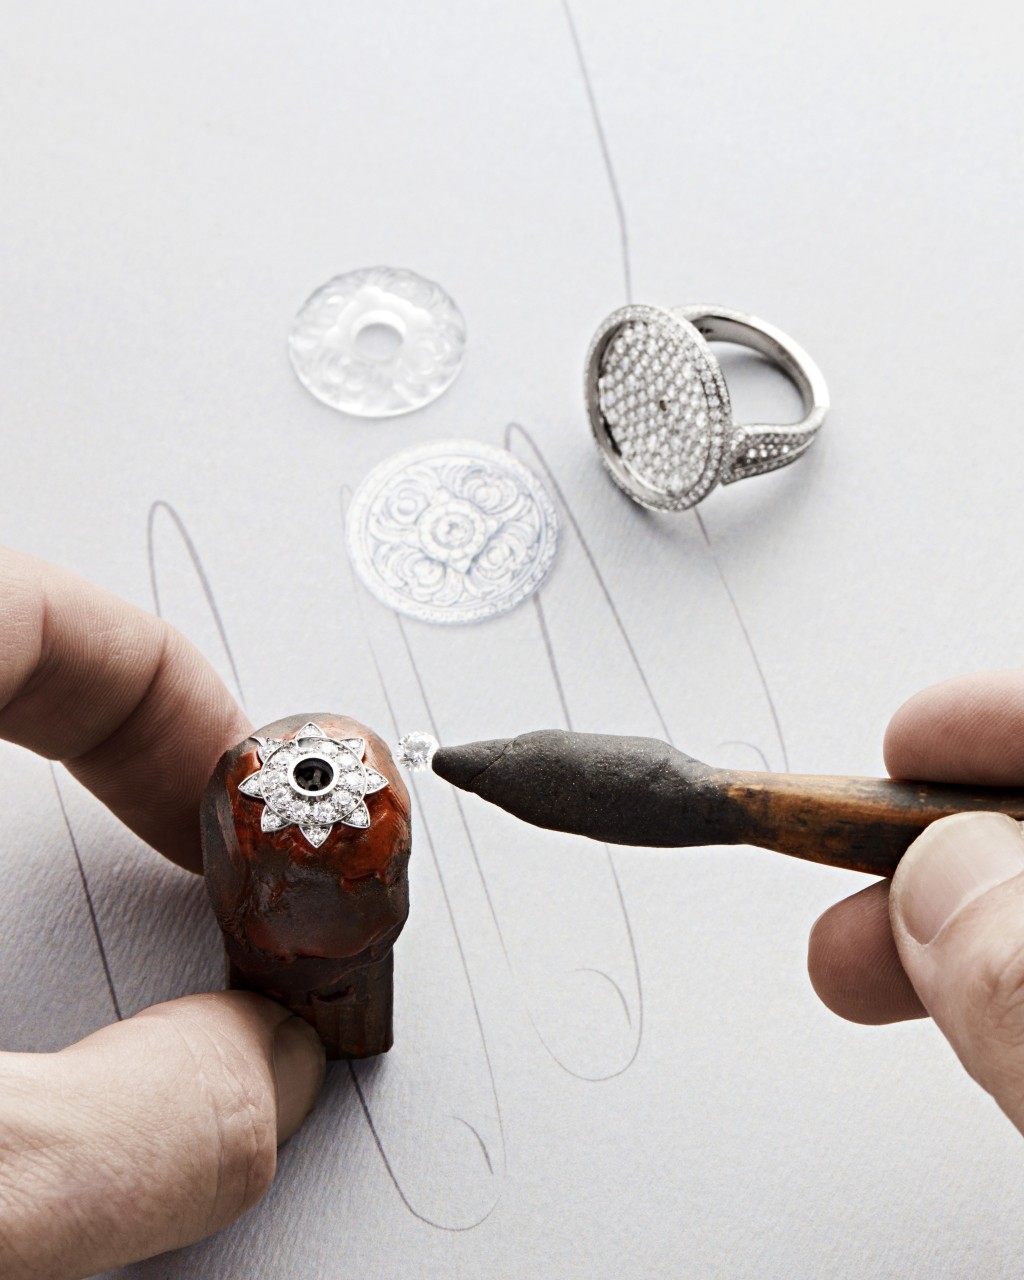 珠宝工匠细心处理Médailles指环的镶嵌工序。